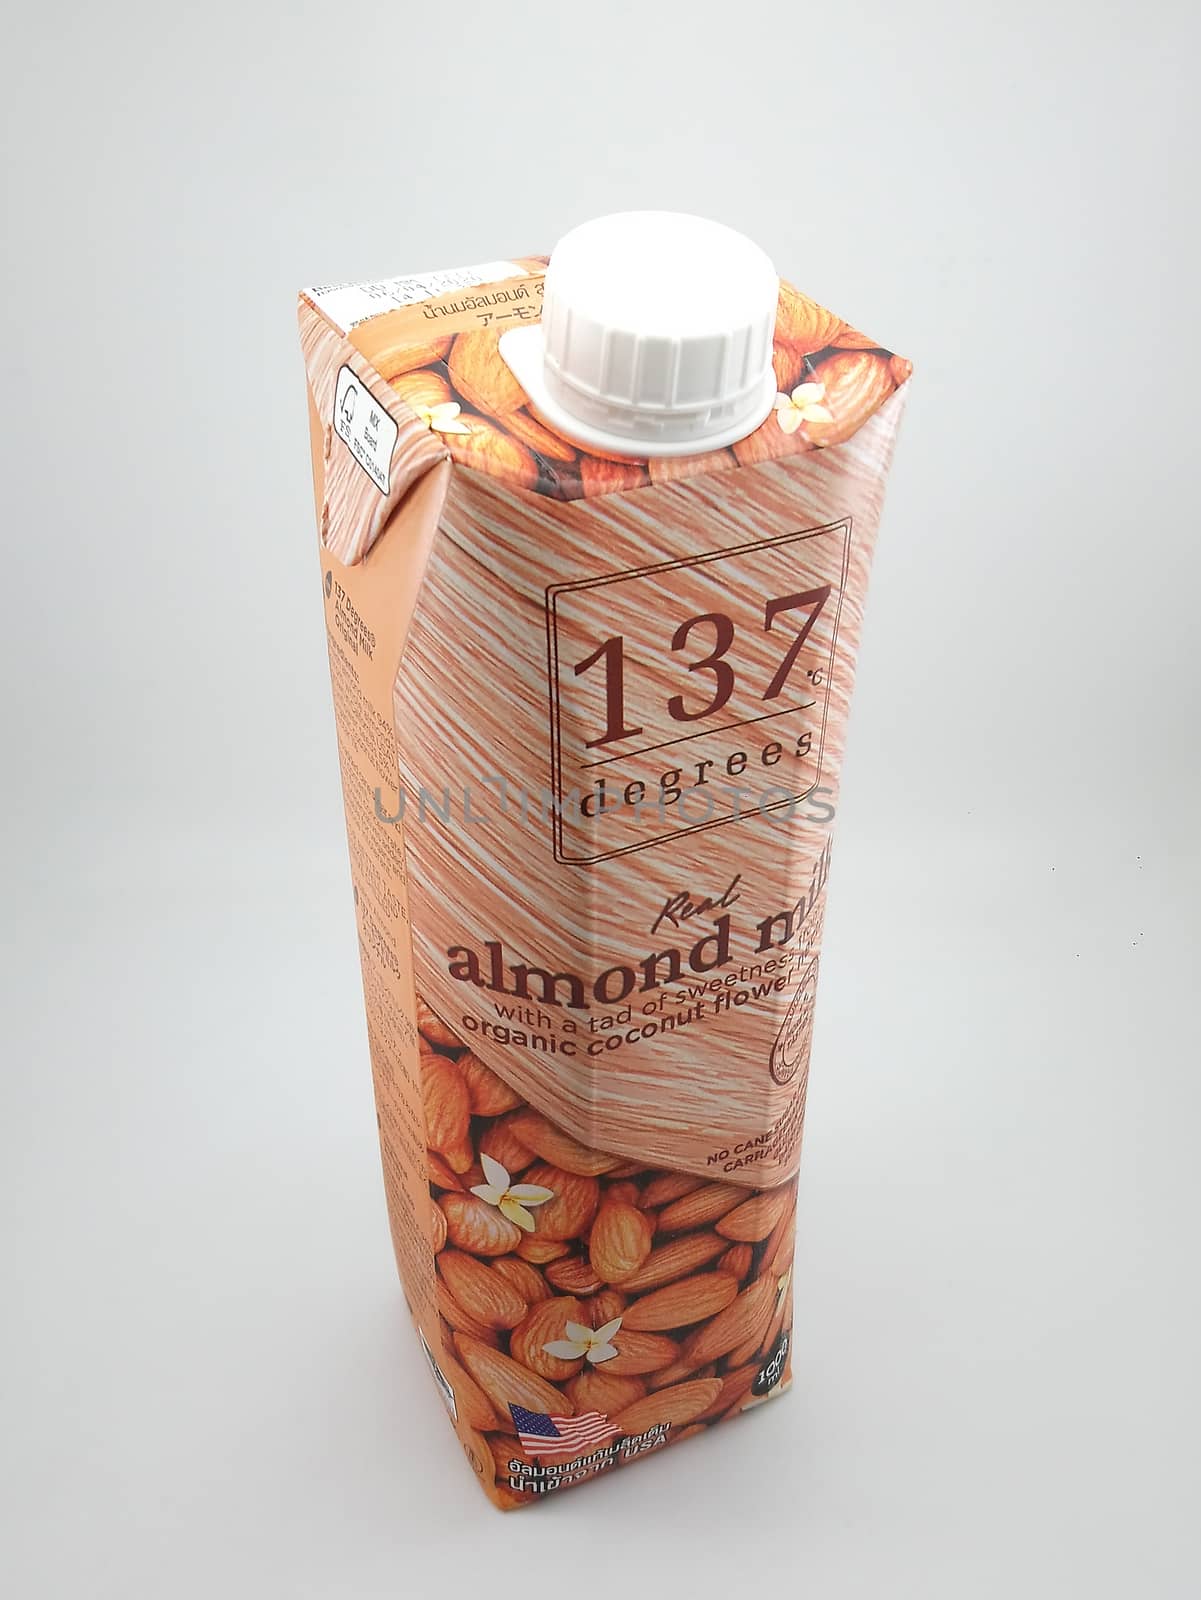 MANILA, PH - SEPT 24 - 137 degrees almond milk on September 24, 2020 in Manila, Philippines.